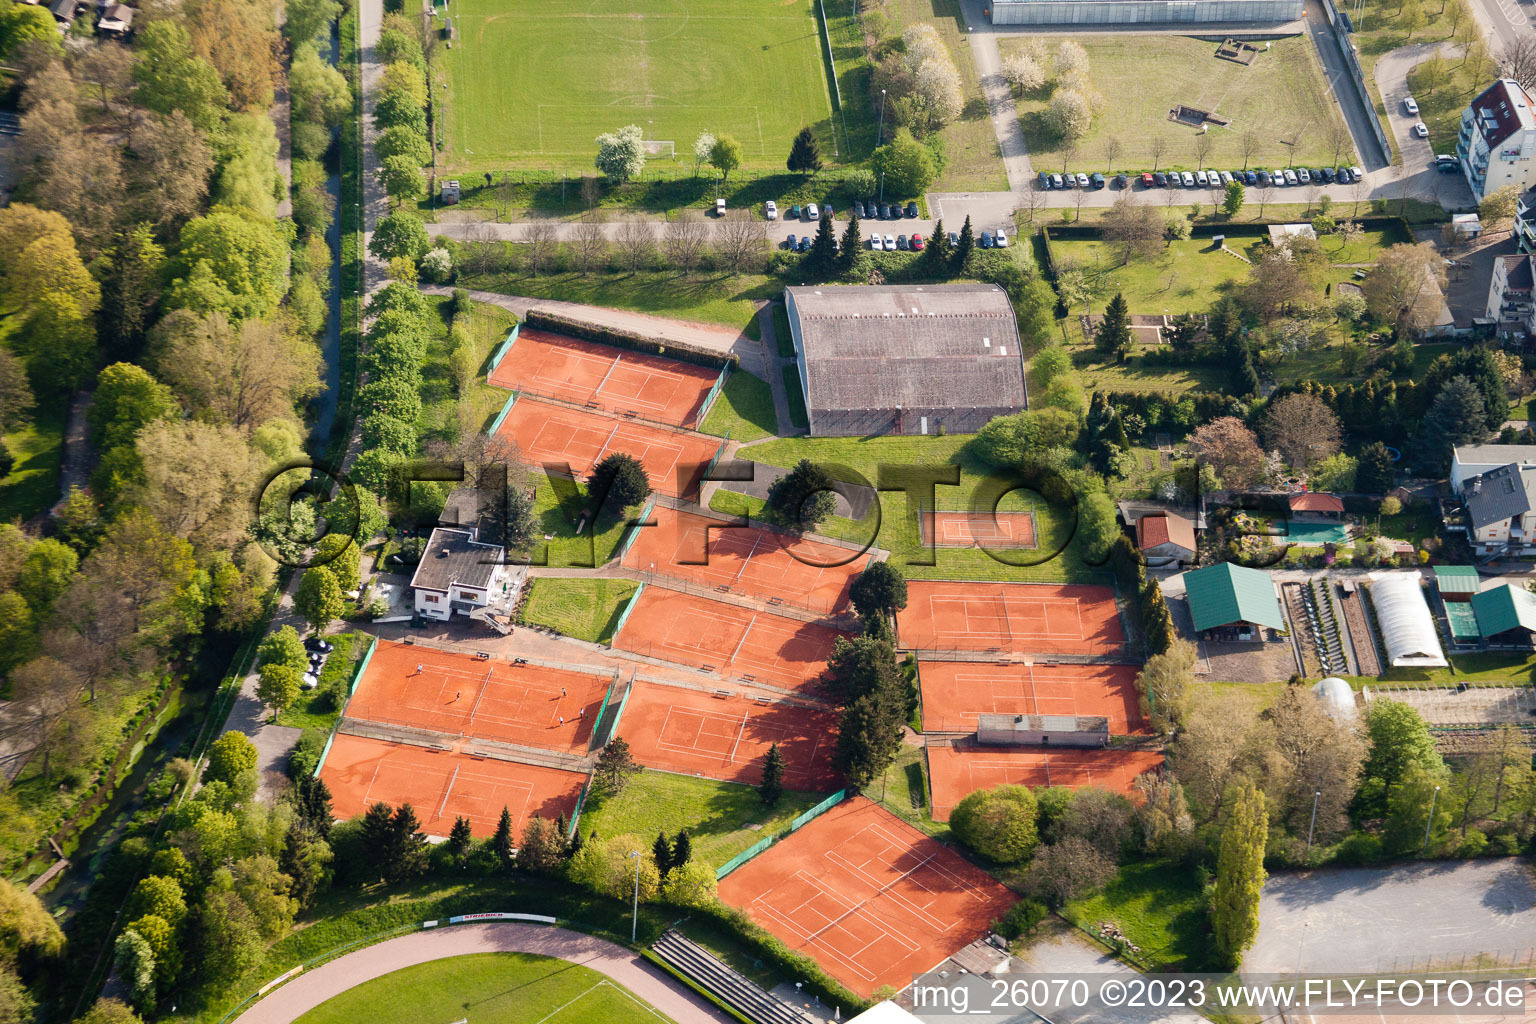 Photographie aérienne de Club de tennis au stade Turmberg à le quartier Durlach in Karlsruhe dans le département Bade-Wurtemberg, Allemagne